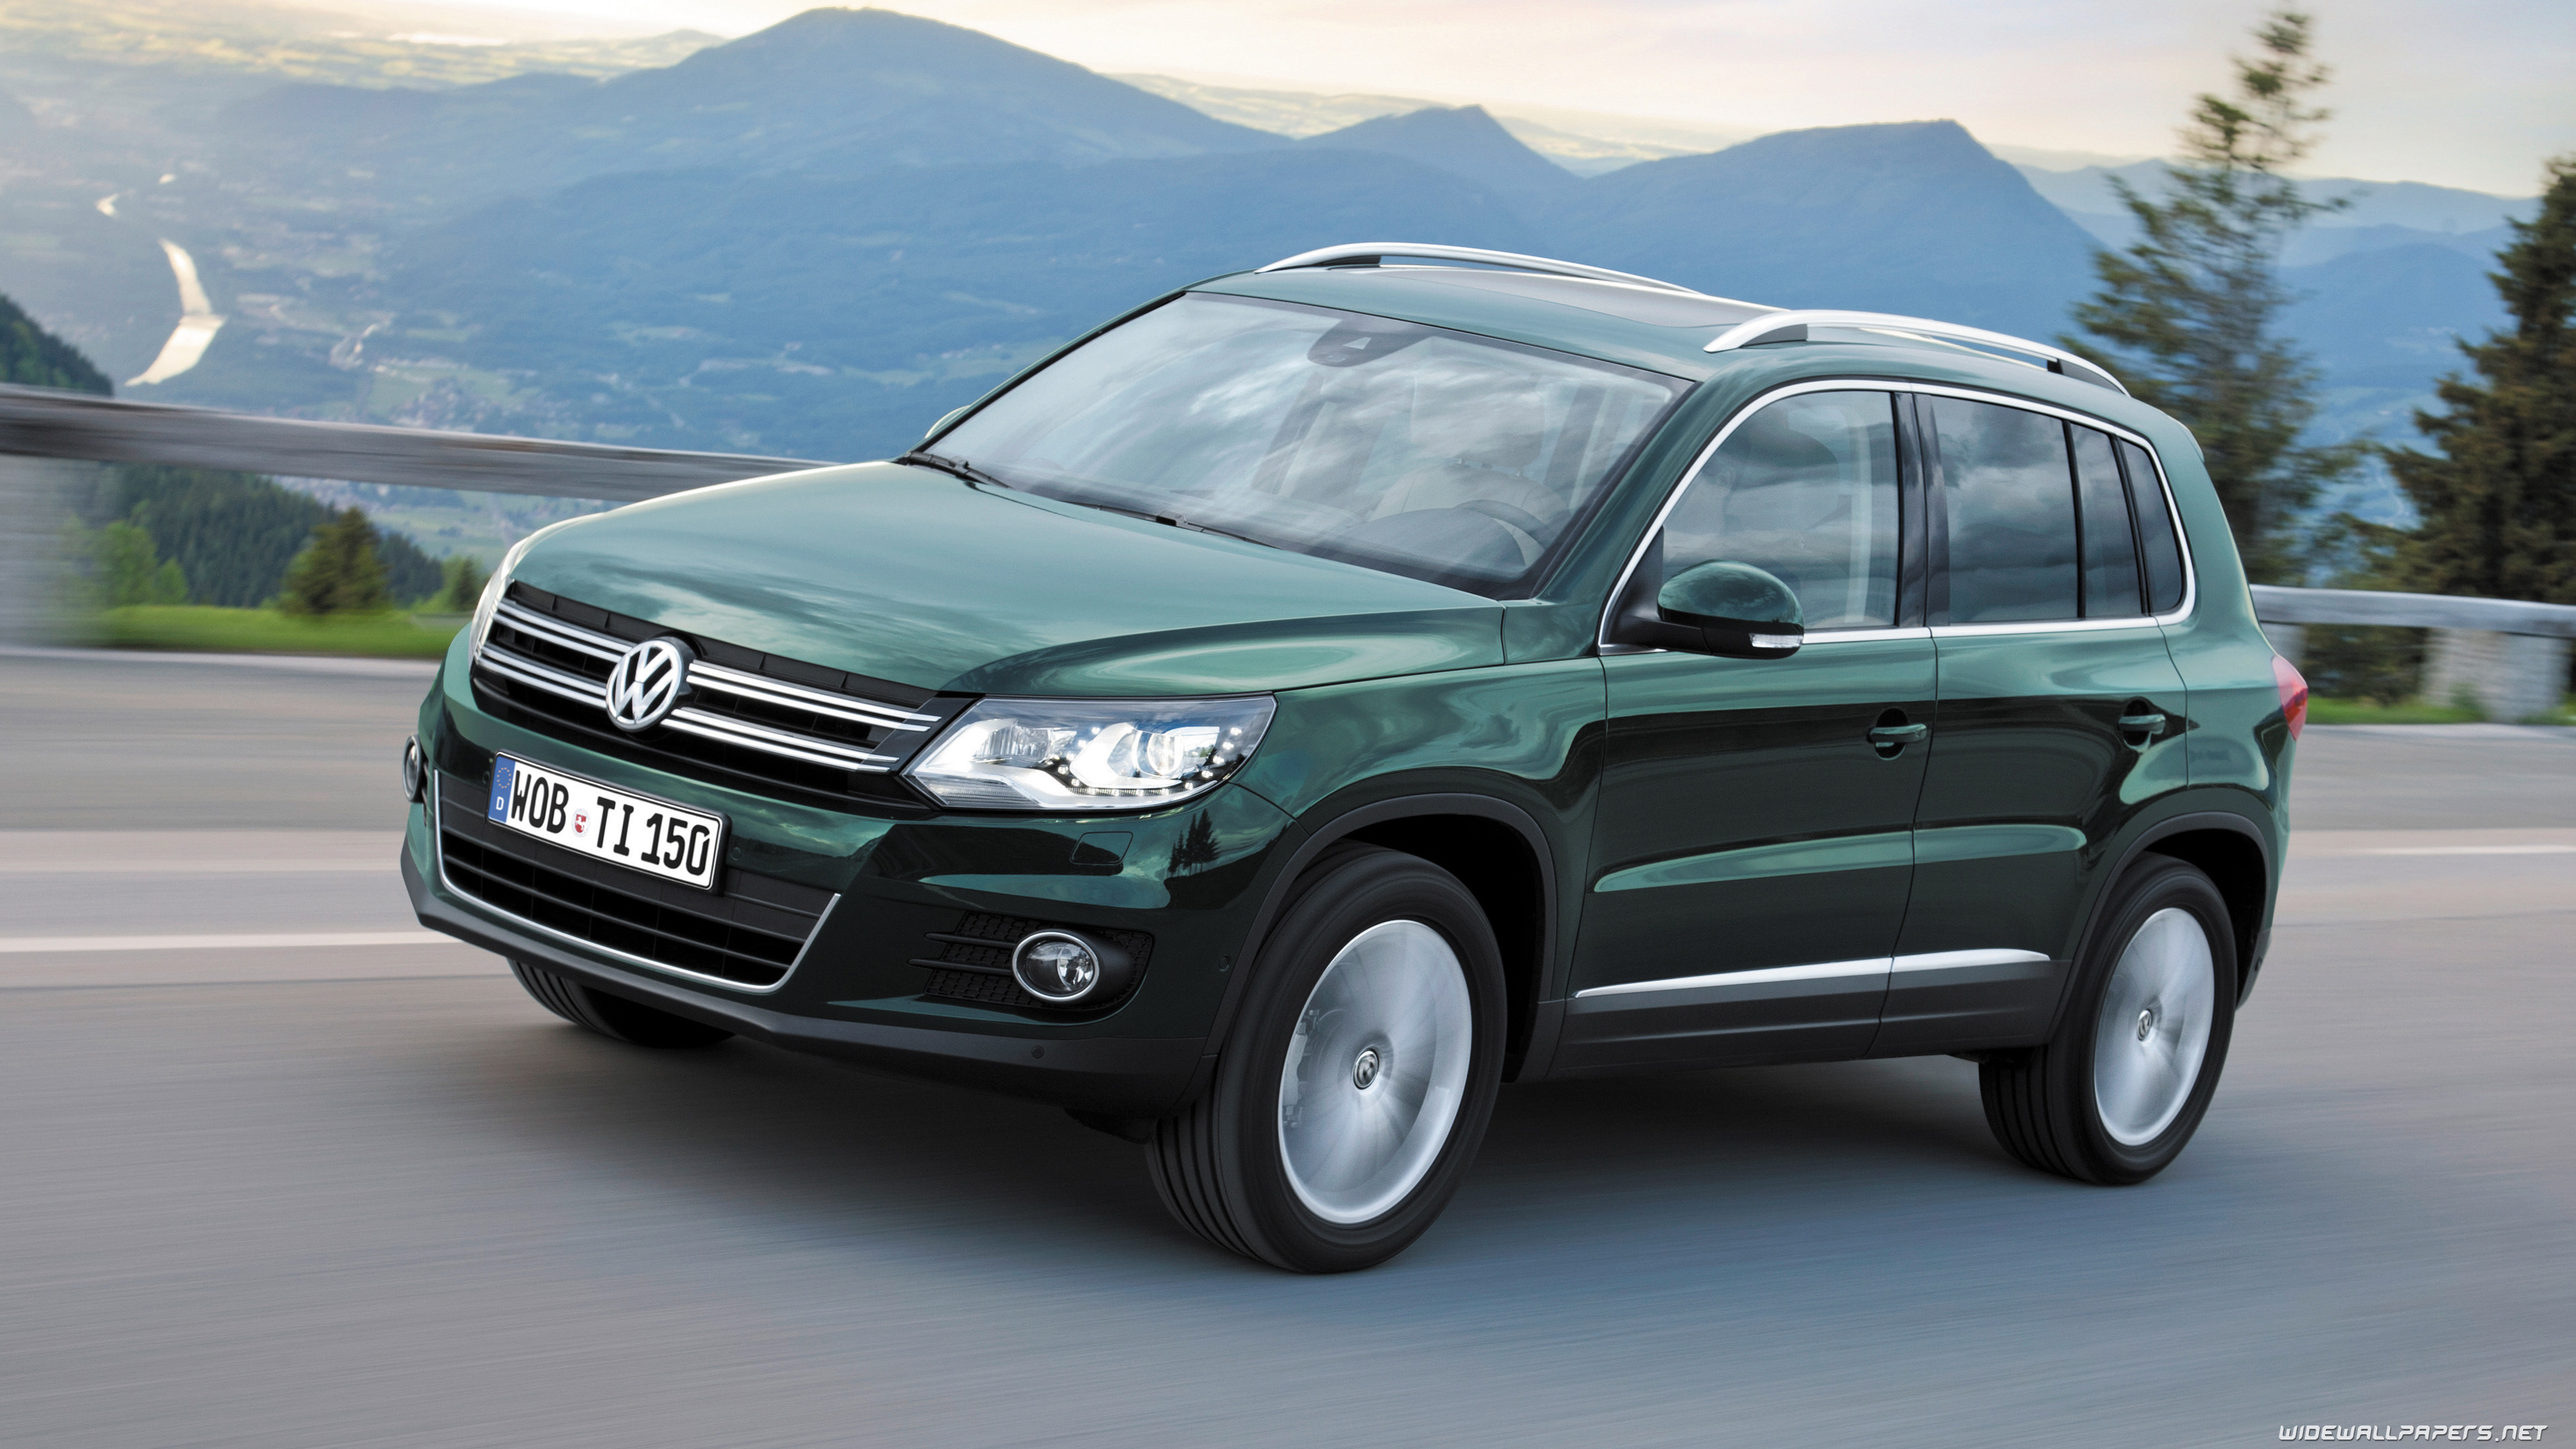 Volkswagen Tiguan, Cars desktop wallpapers, 4K ultra HD, Compact SUV, 3840x2160 4K Desktop